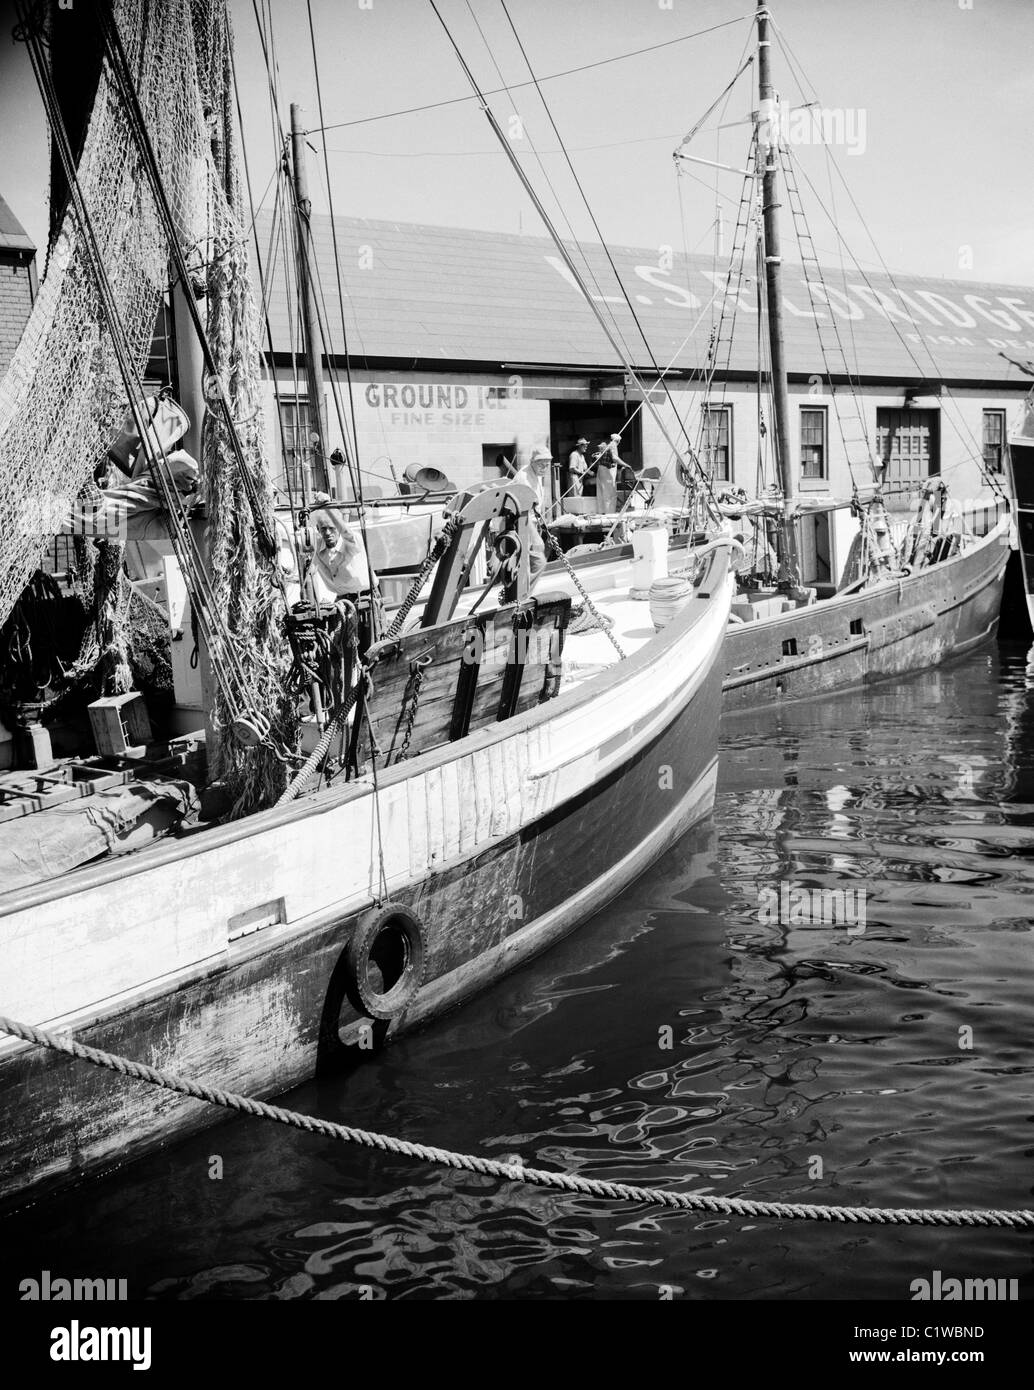 Bateaux amarrés dans le port de pêche Banque D'Images